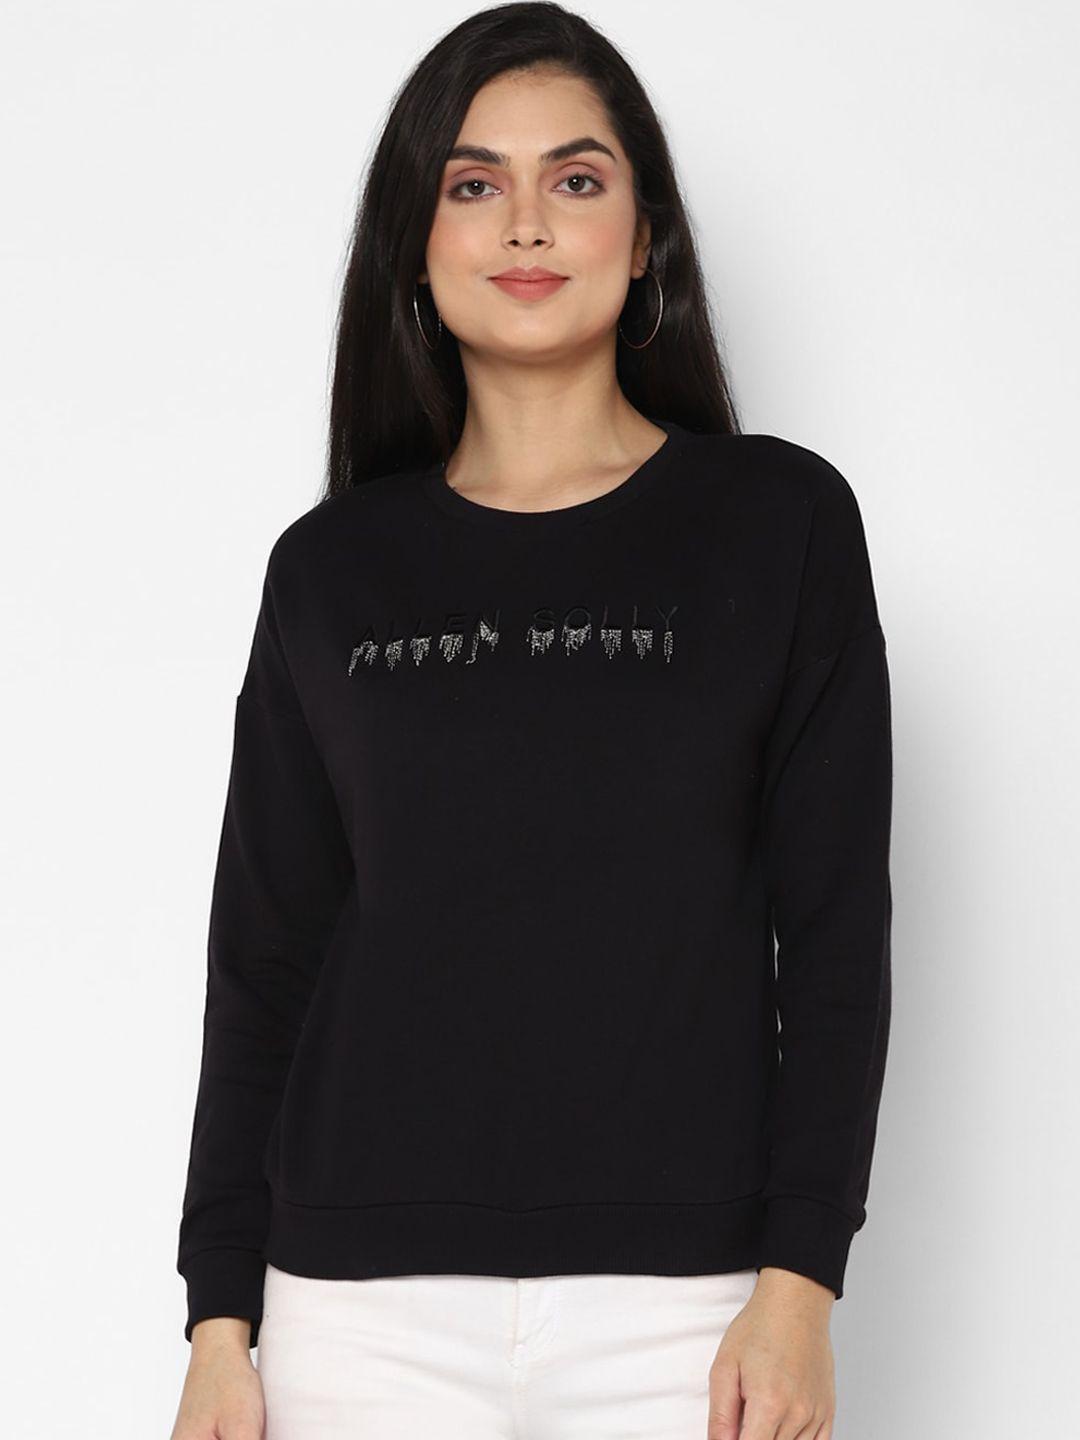 allen solly woman women black sweatshirt